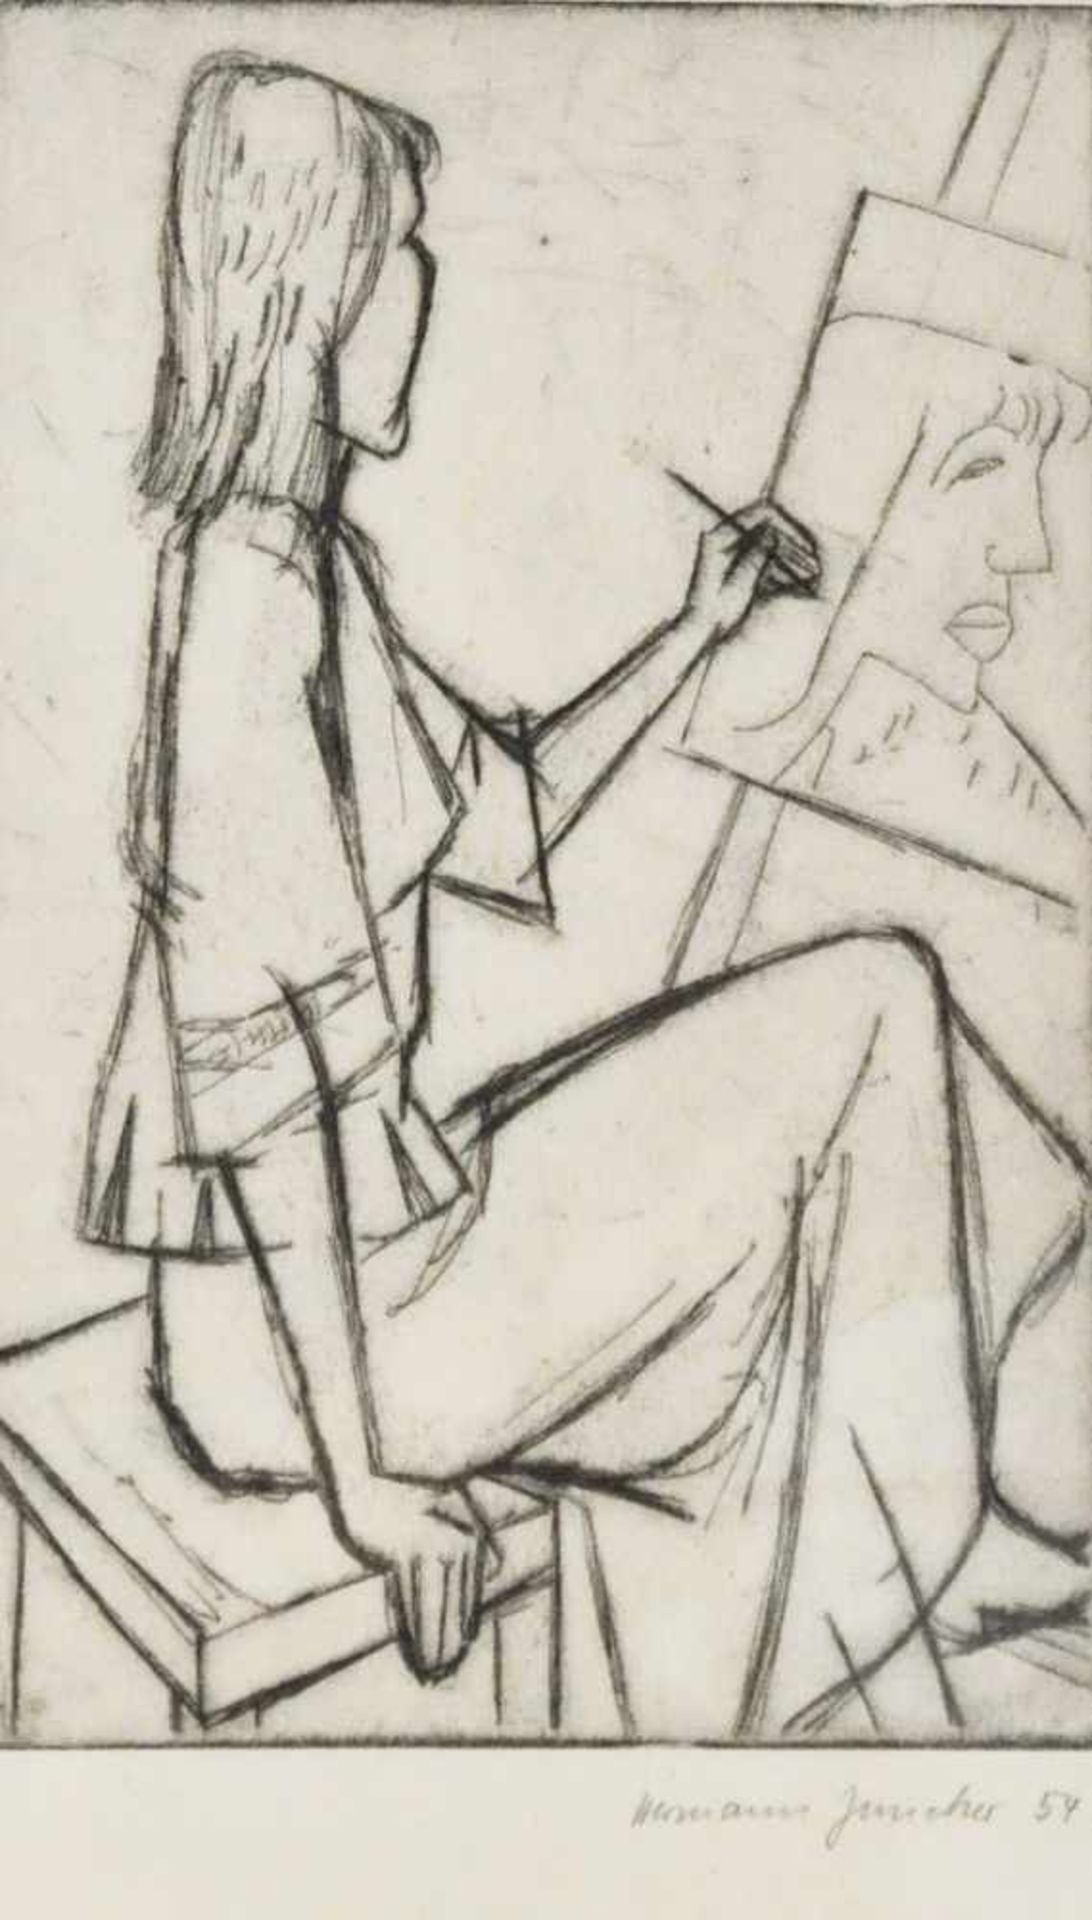 Juncker, Hermann Theophil (1929 - tätig in Hamburg),"Mädchen beim Zeichnen", Radierung, 25,0 x 16,